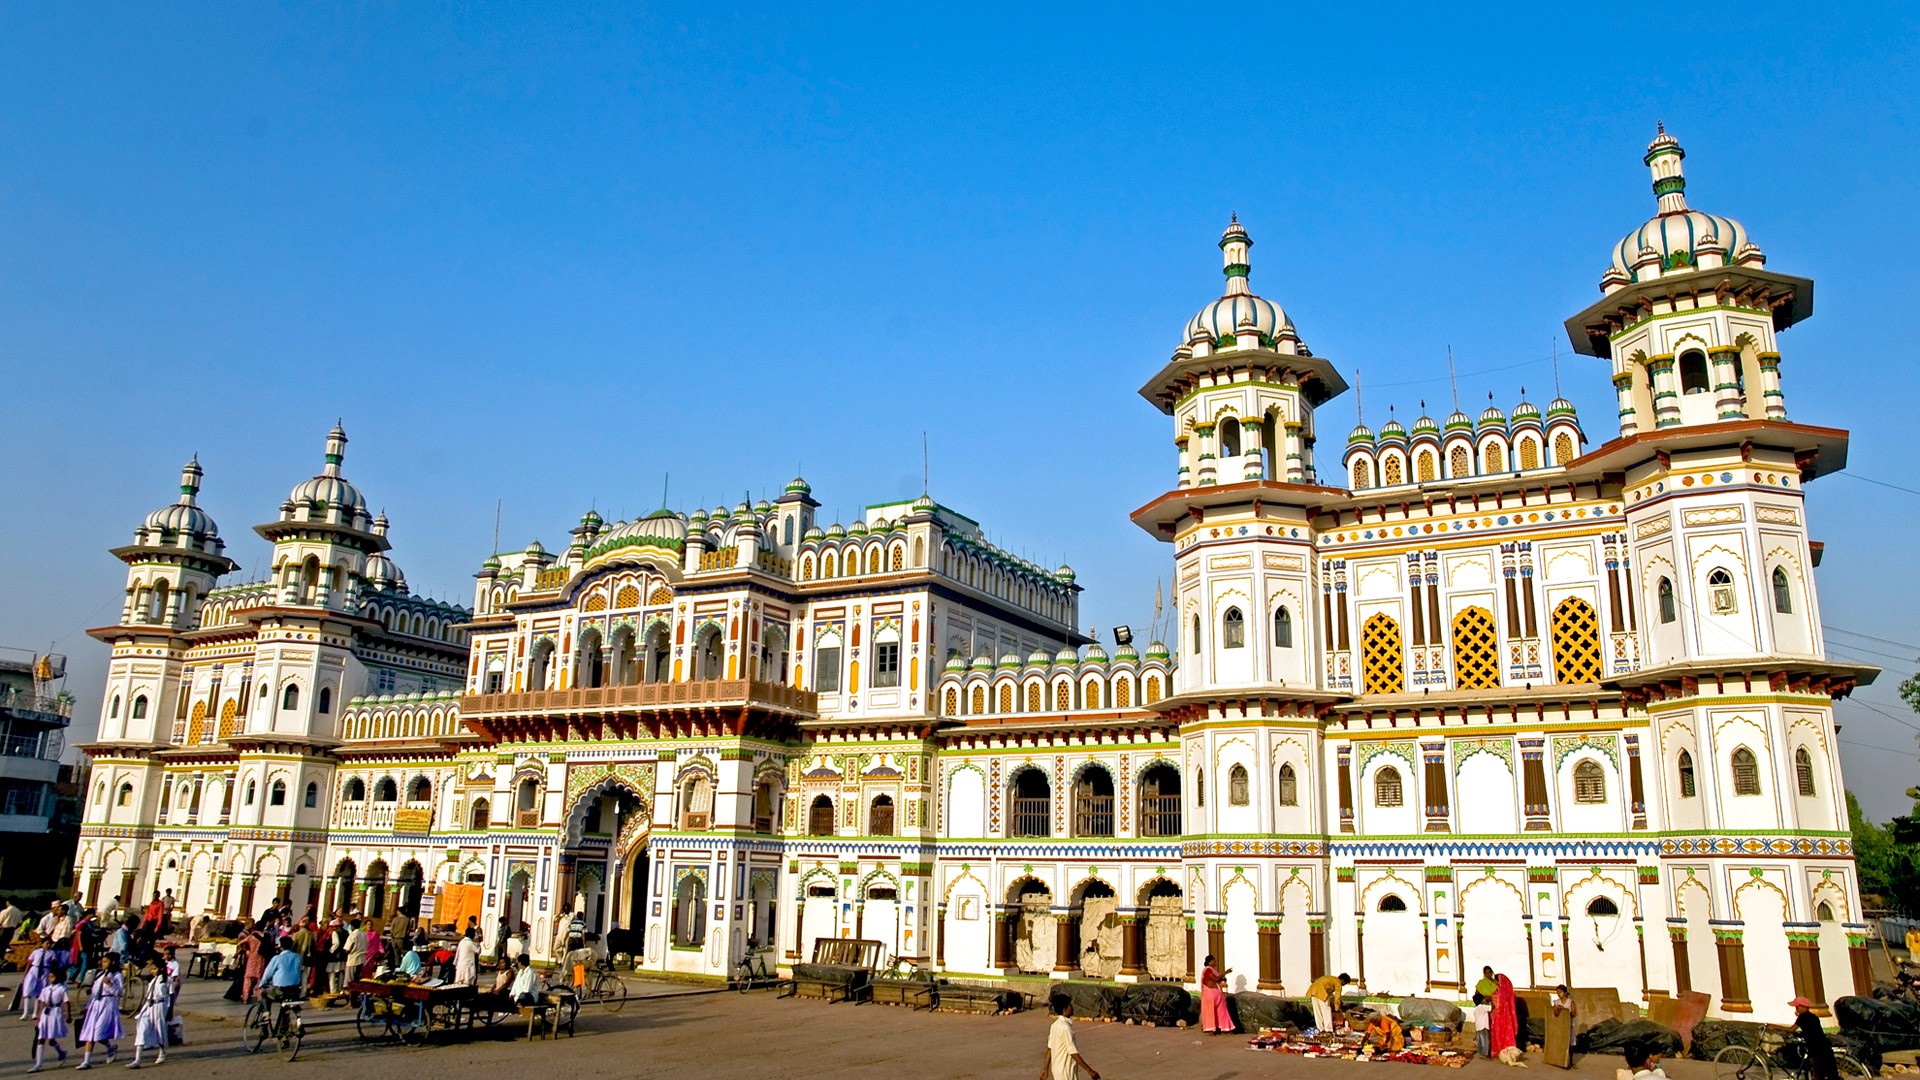 जनकपुरलाई धार्मिक पर्यटकीय नगरी बनाउँदै उपमहानगर